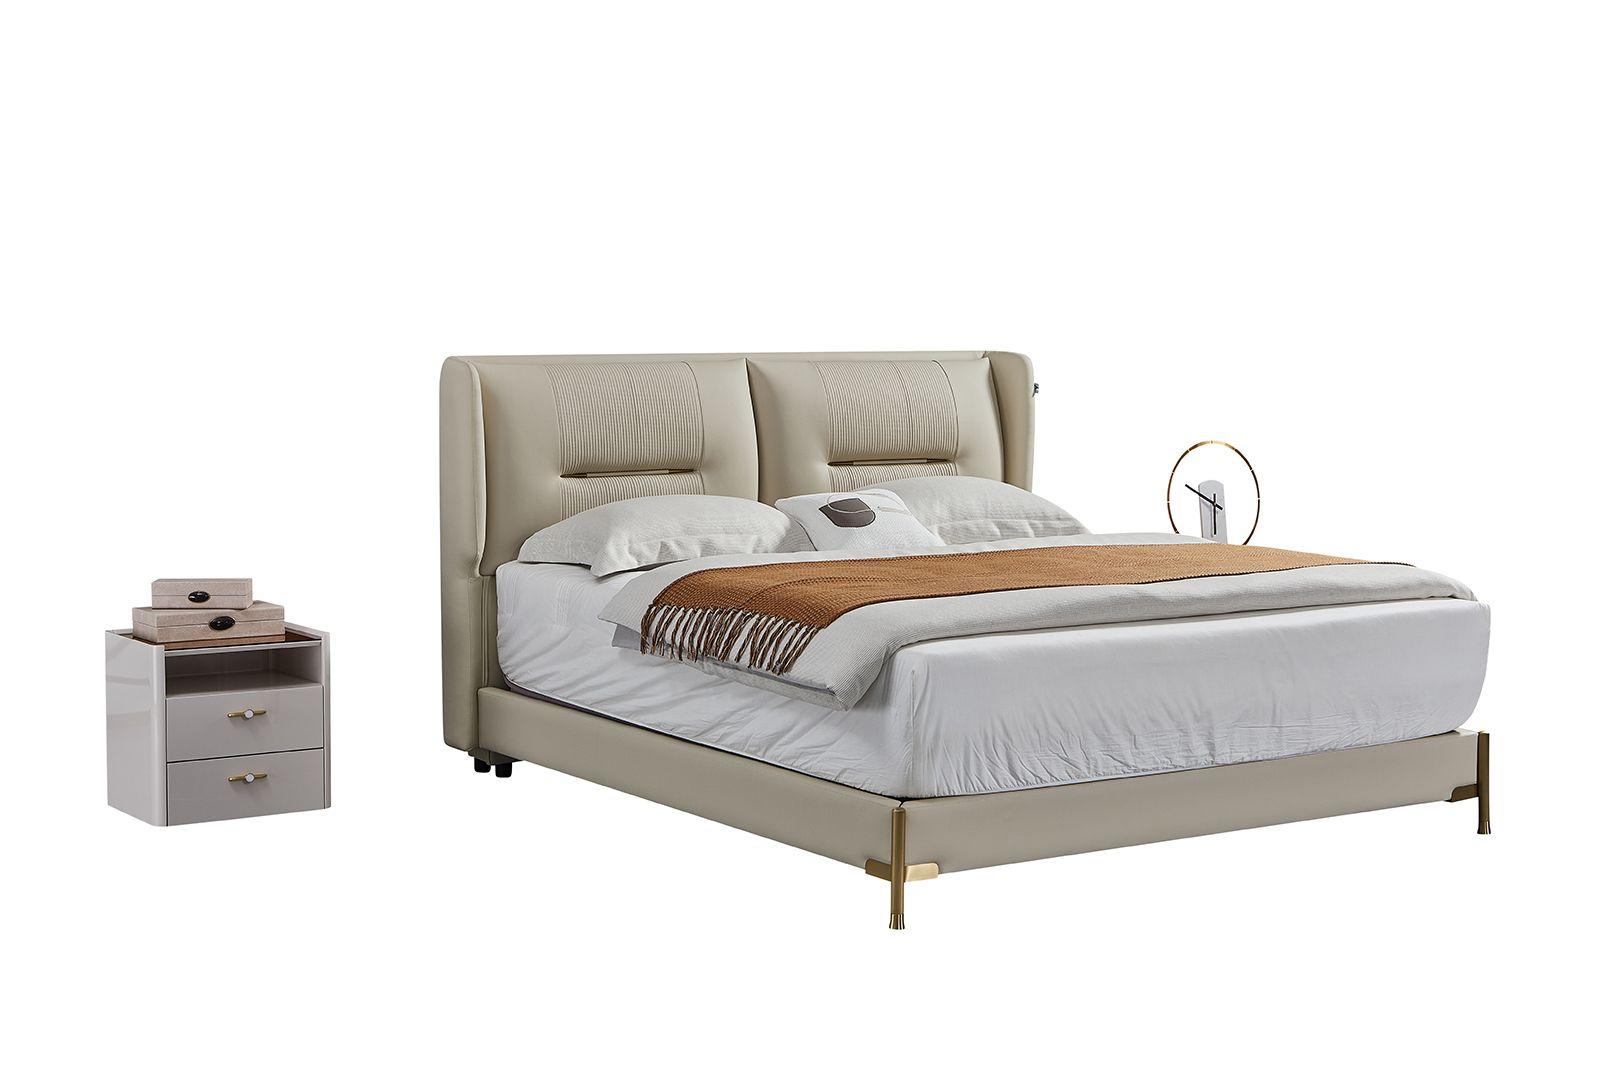 

    
American Eagle Furniture B-Y2012-EK / NS-Y2012 Platform Bedroom Set Gray B-Y2012-EK-3PC
